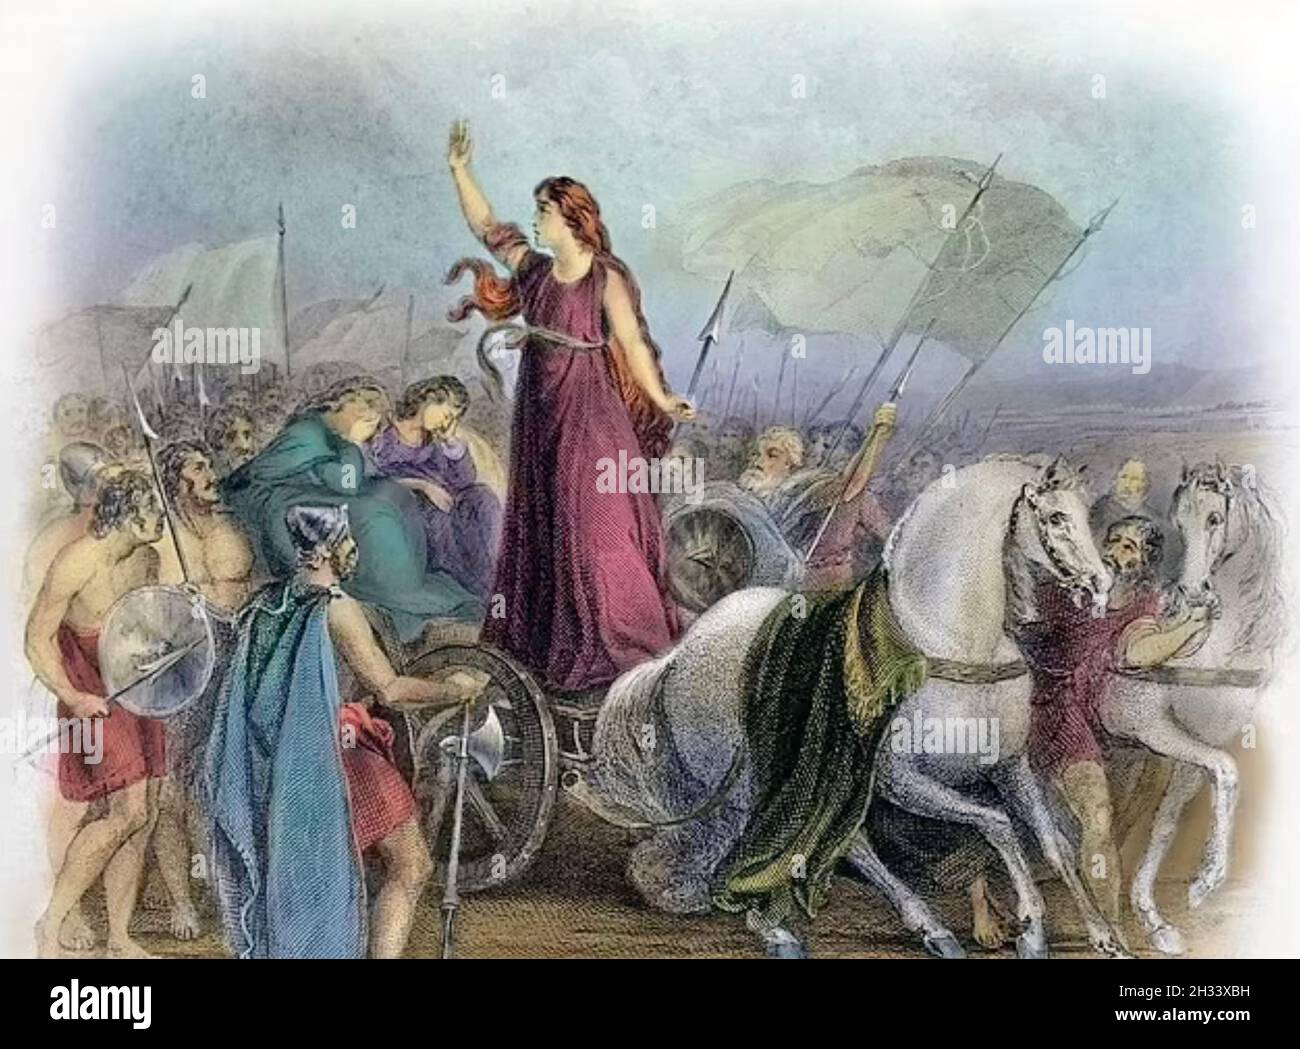 BOUDICA 19. Jahrhundert Illustration der Königin des britischen Iceni-Stammes, die einen Aufstand gegen die römische Besatzung um 60 n. Chr. führte. Stockfoto